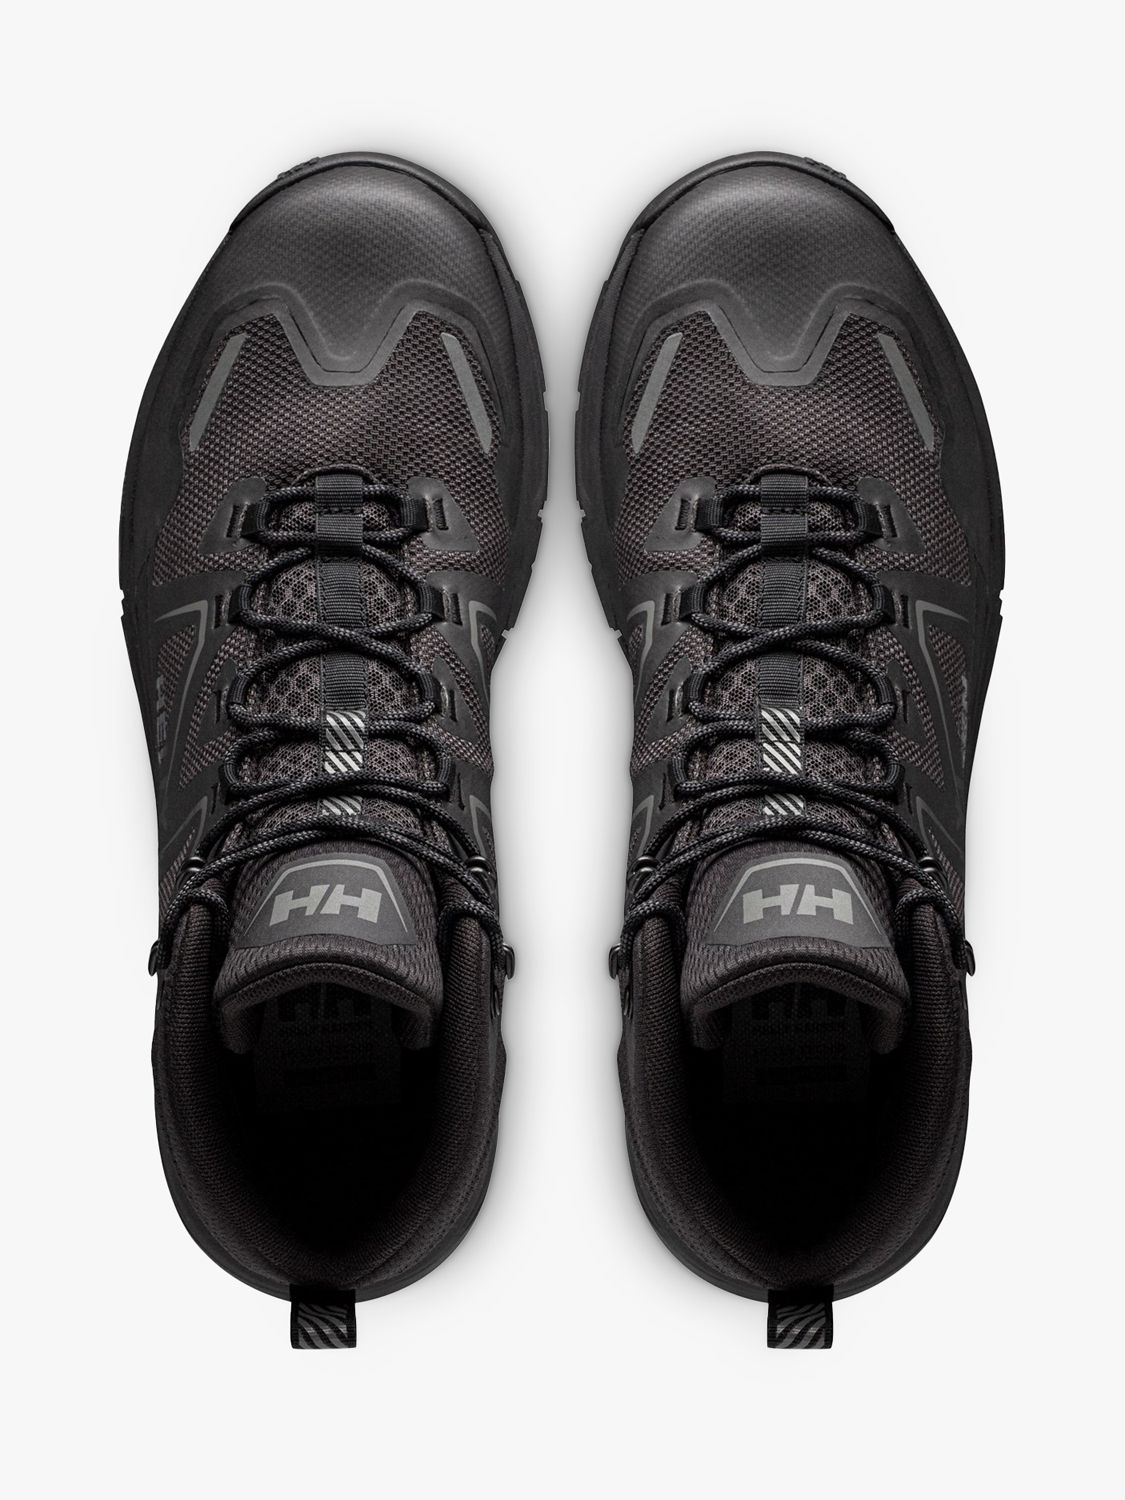 Helly Hansen Cascade Waterproof Lace Up Walking Boots, Black, 7